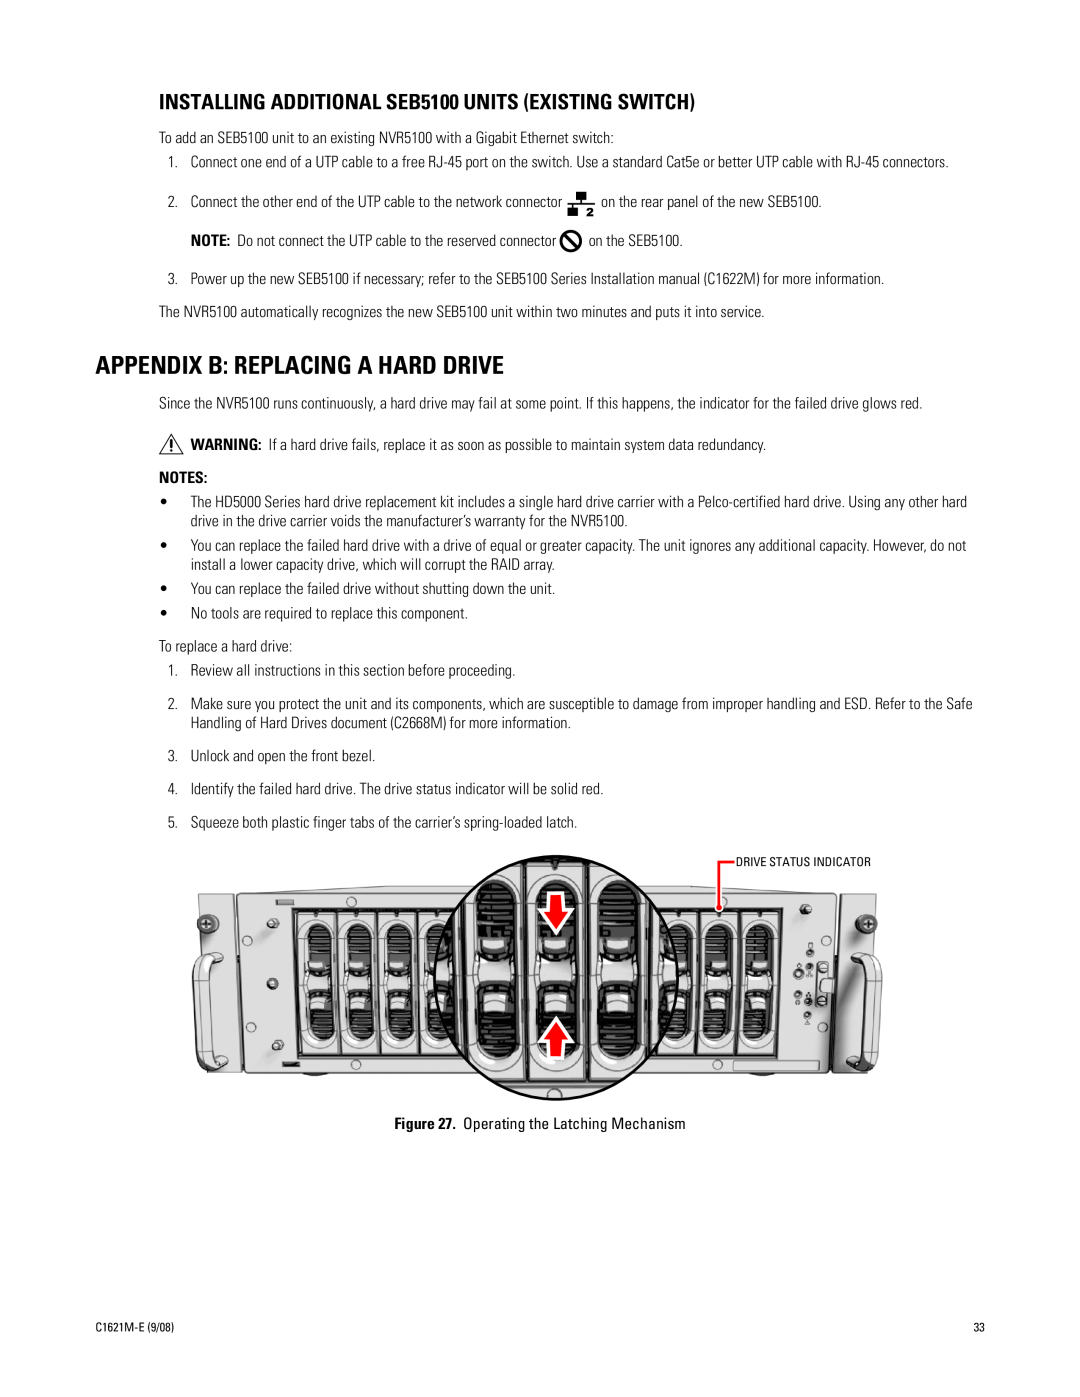 Pelco C1621M-E (9/08) 3 manual Appendix B Replacing A Hard Drive 